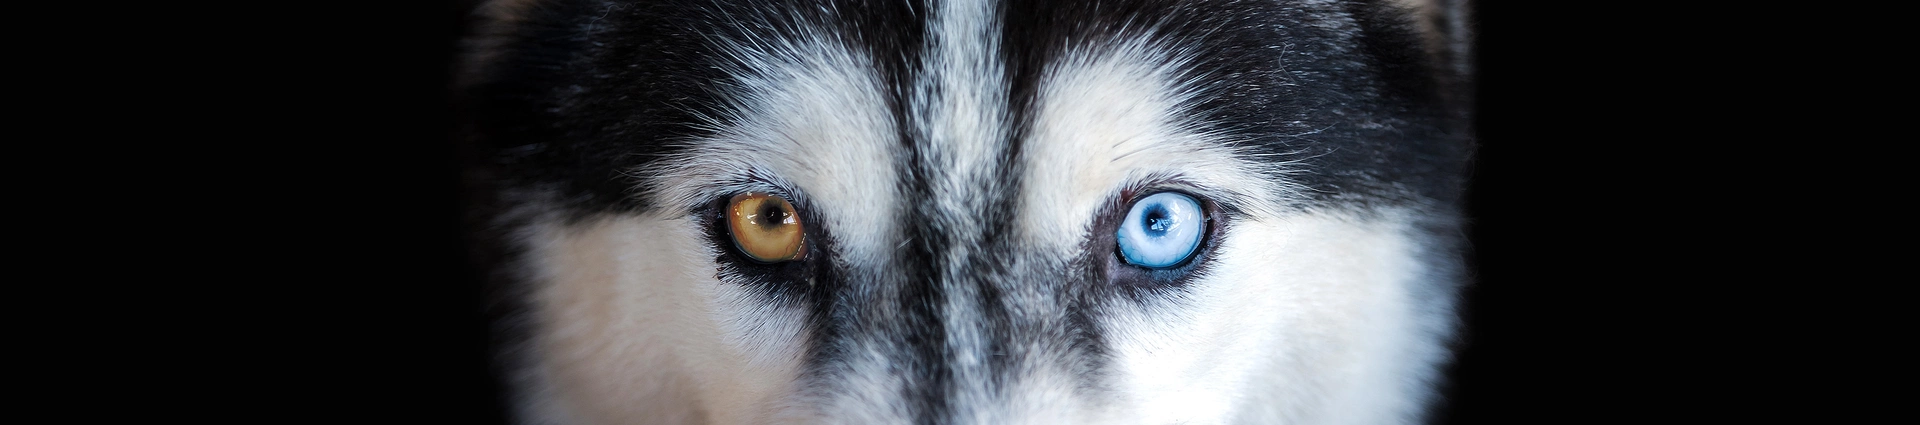 Husky mit zwei unterschiedlich gefärbten Augen